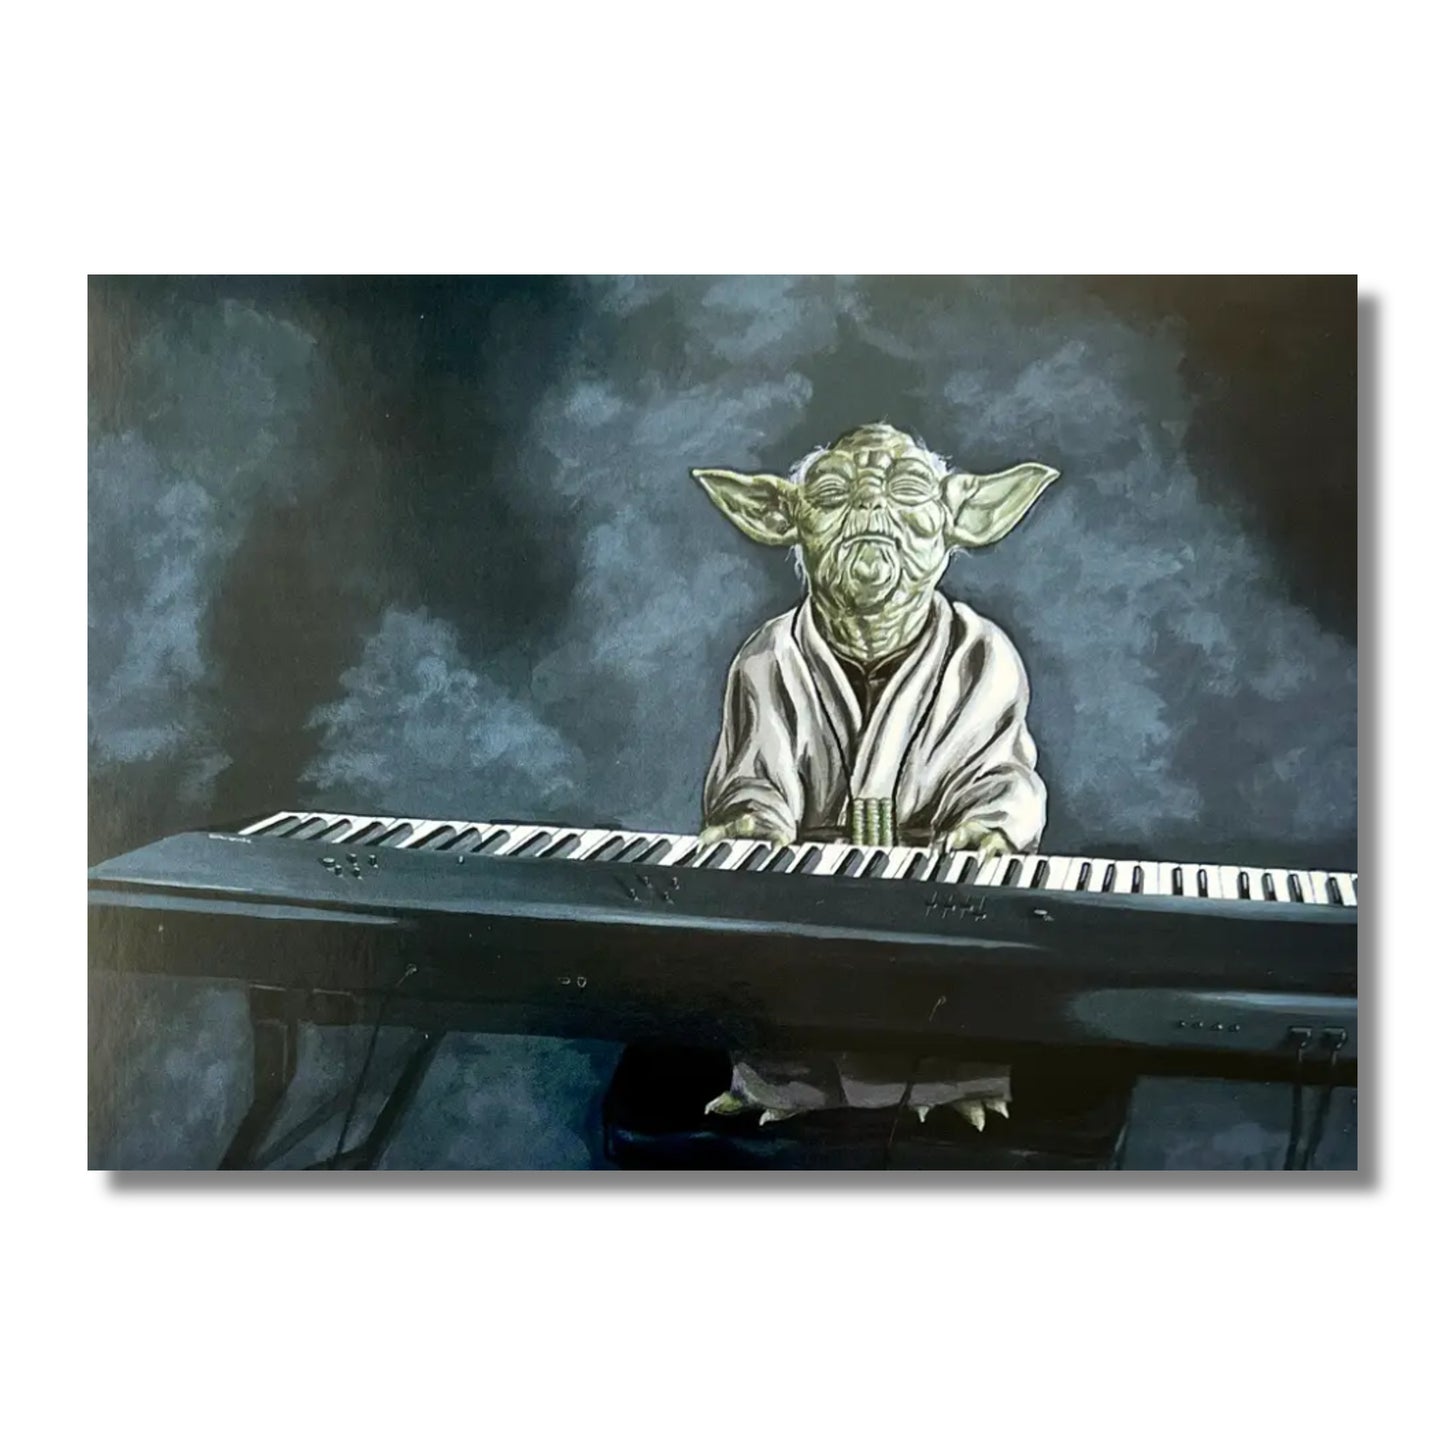 Blank Card — Yoda Playing the Keyboard